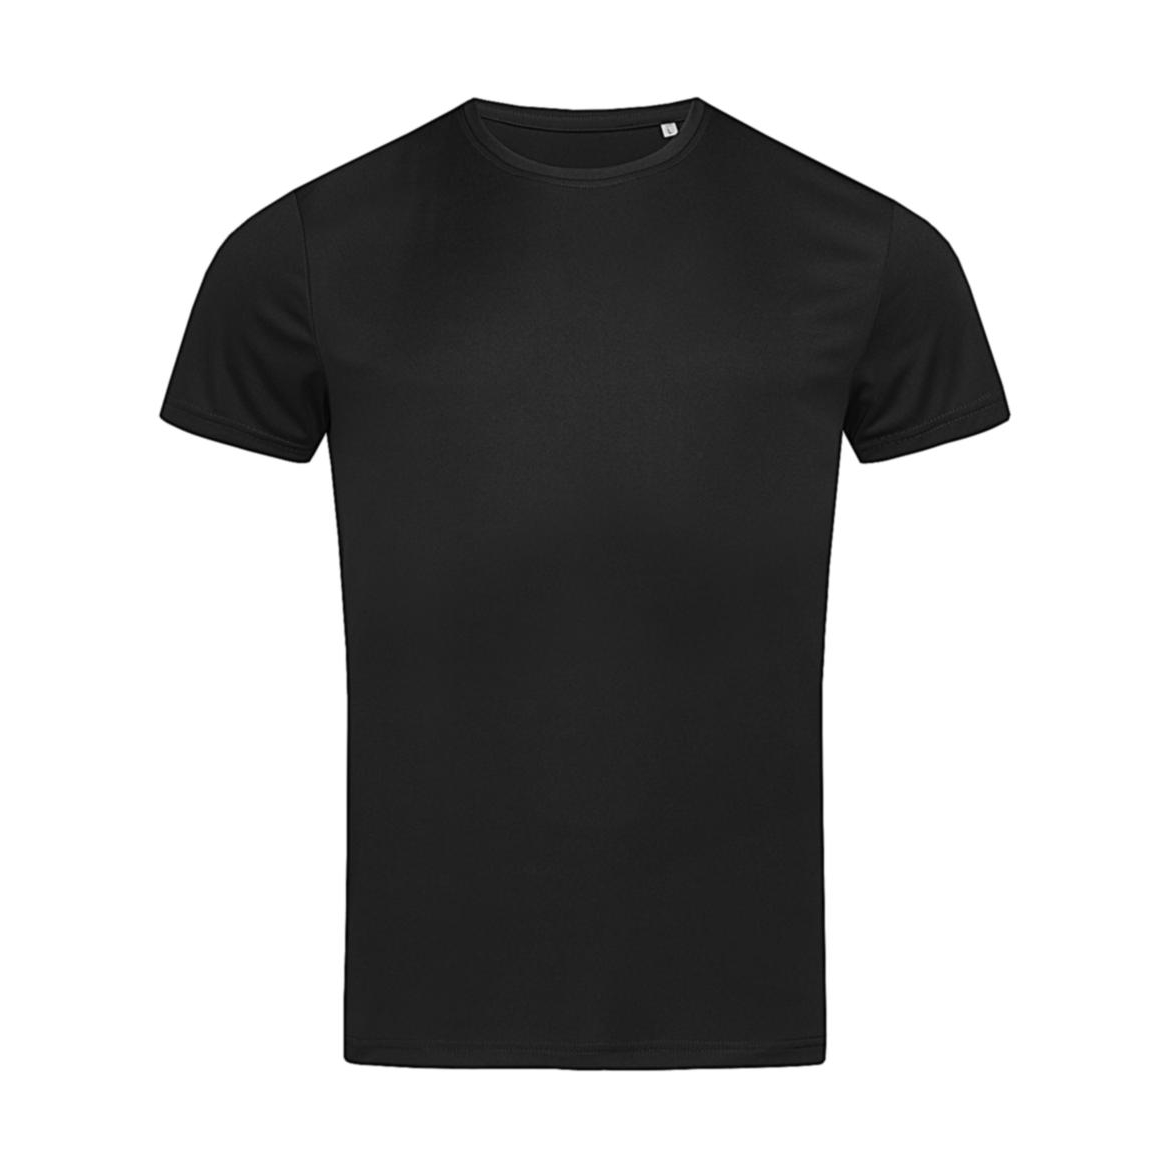 Triko pánské Stedman sportovní tričko - černé, XL